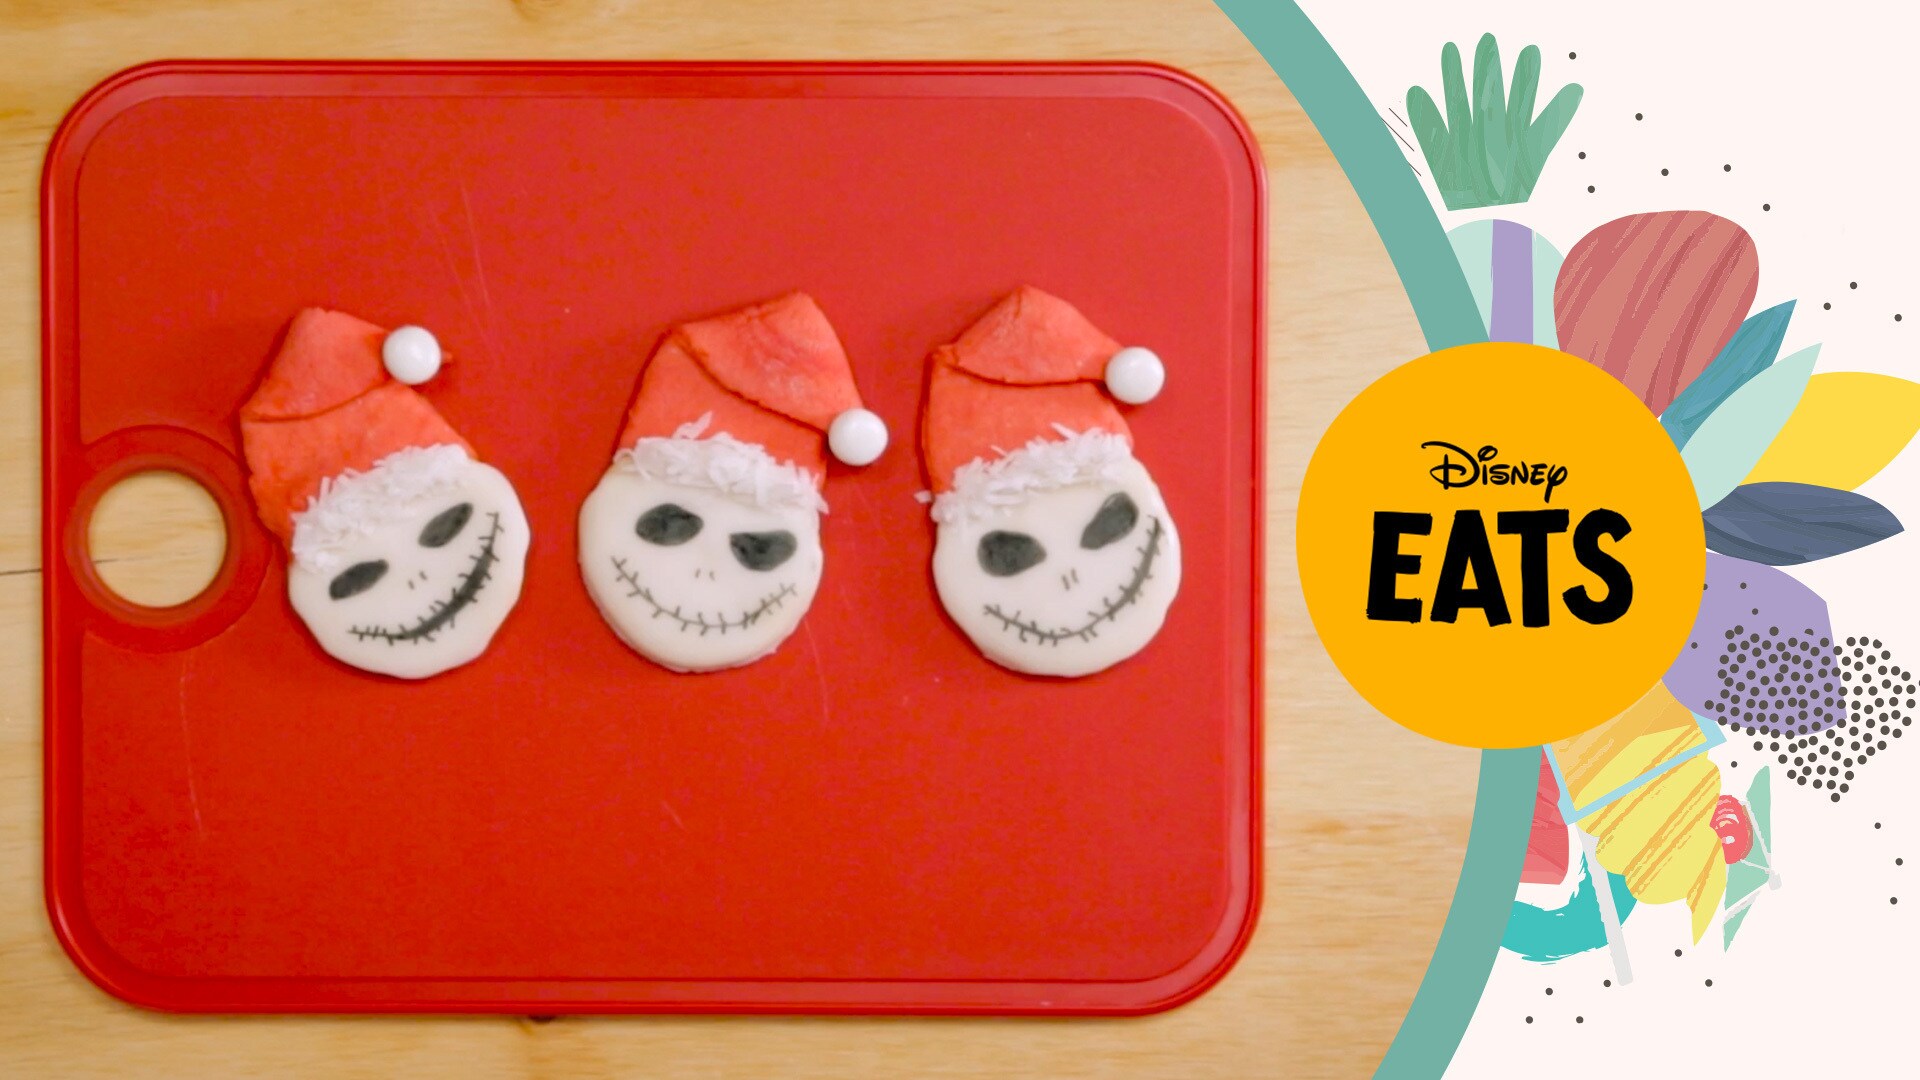 The Nightmare Before Christmas' Jack Skellington Cookies | Disney Eats